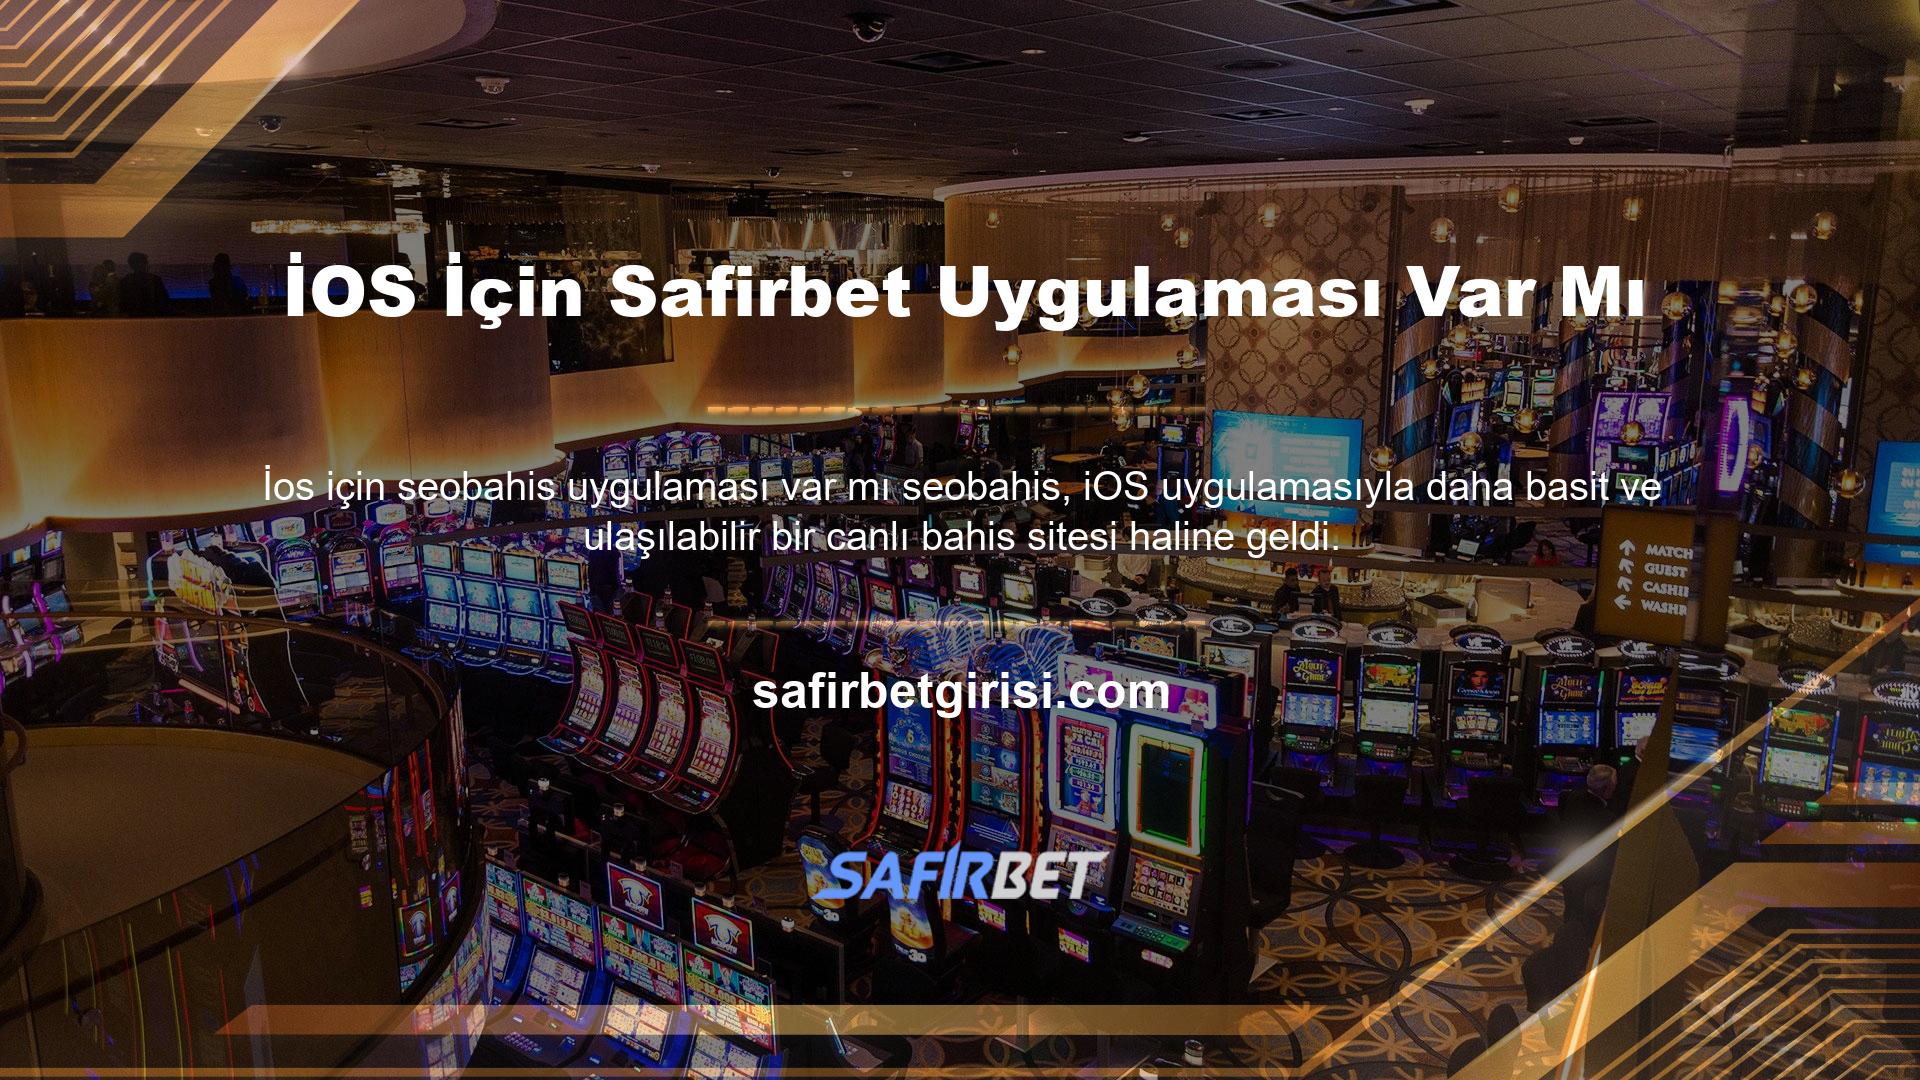 Safirbet Giriş Adres Ofisi, üyelerimize 7/24 bahis ve casino hizmetleri sunmak için çeşitli seçenekler sunmaktadır